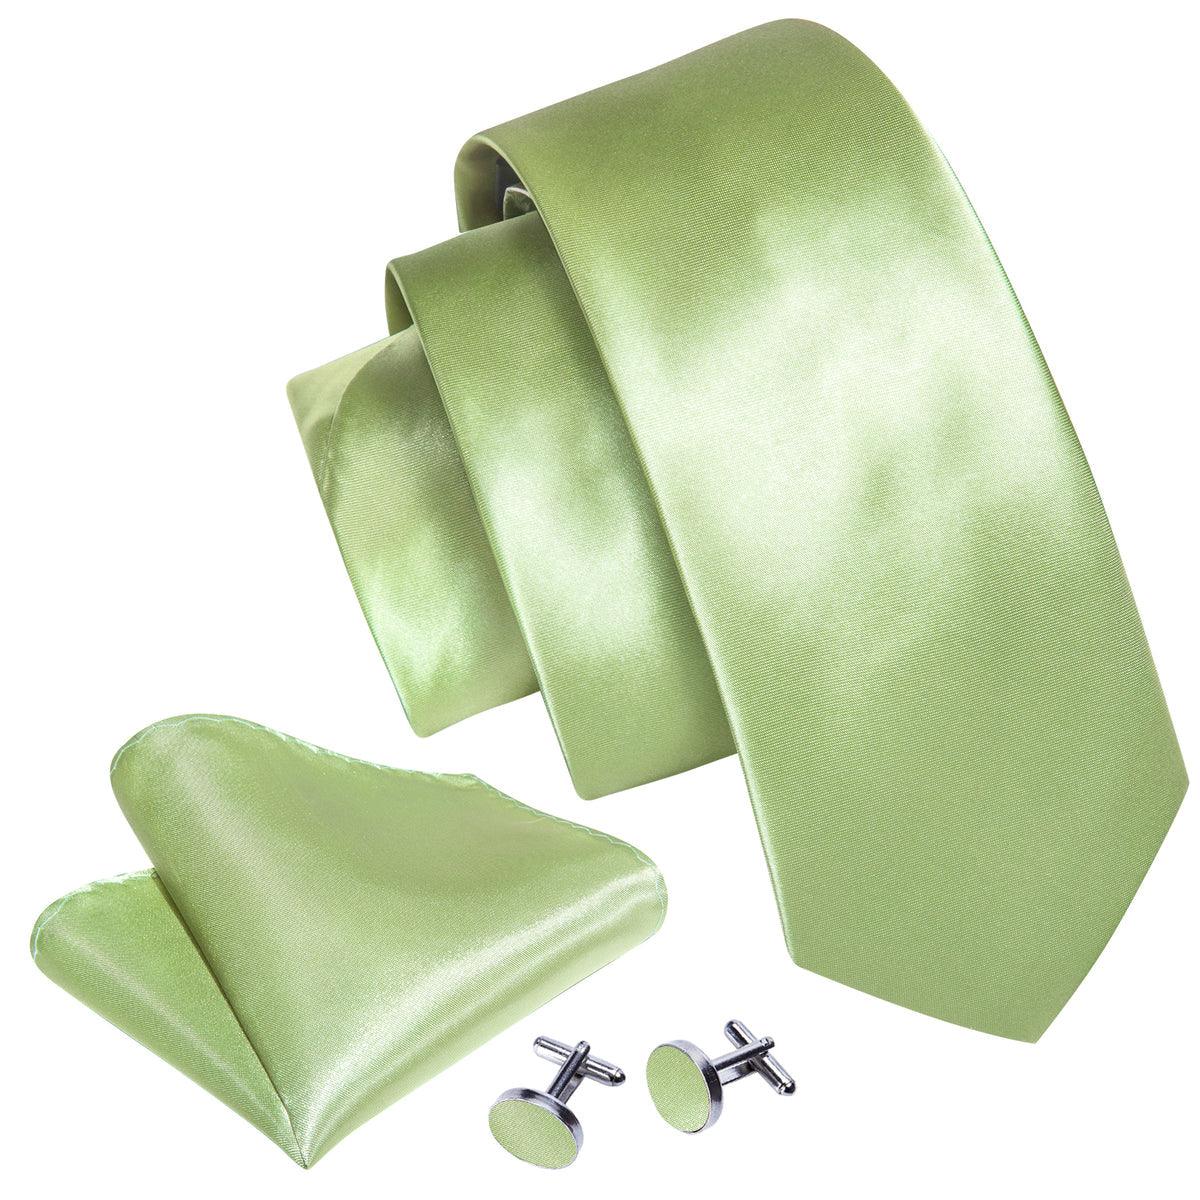 Sage Green Solid Silk Tie Pocket Square Cufflink Set - STYLETIE